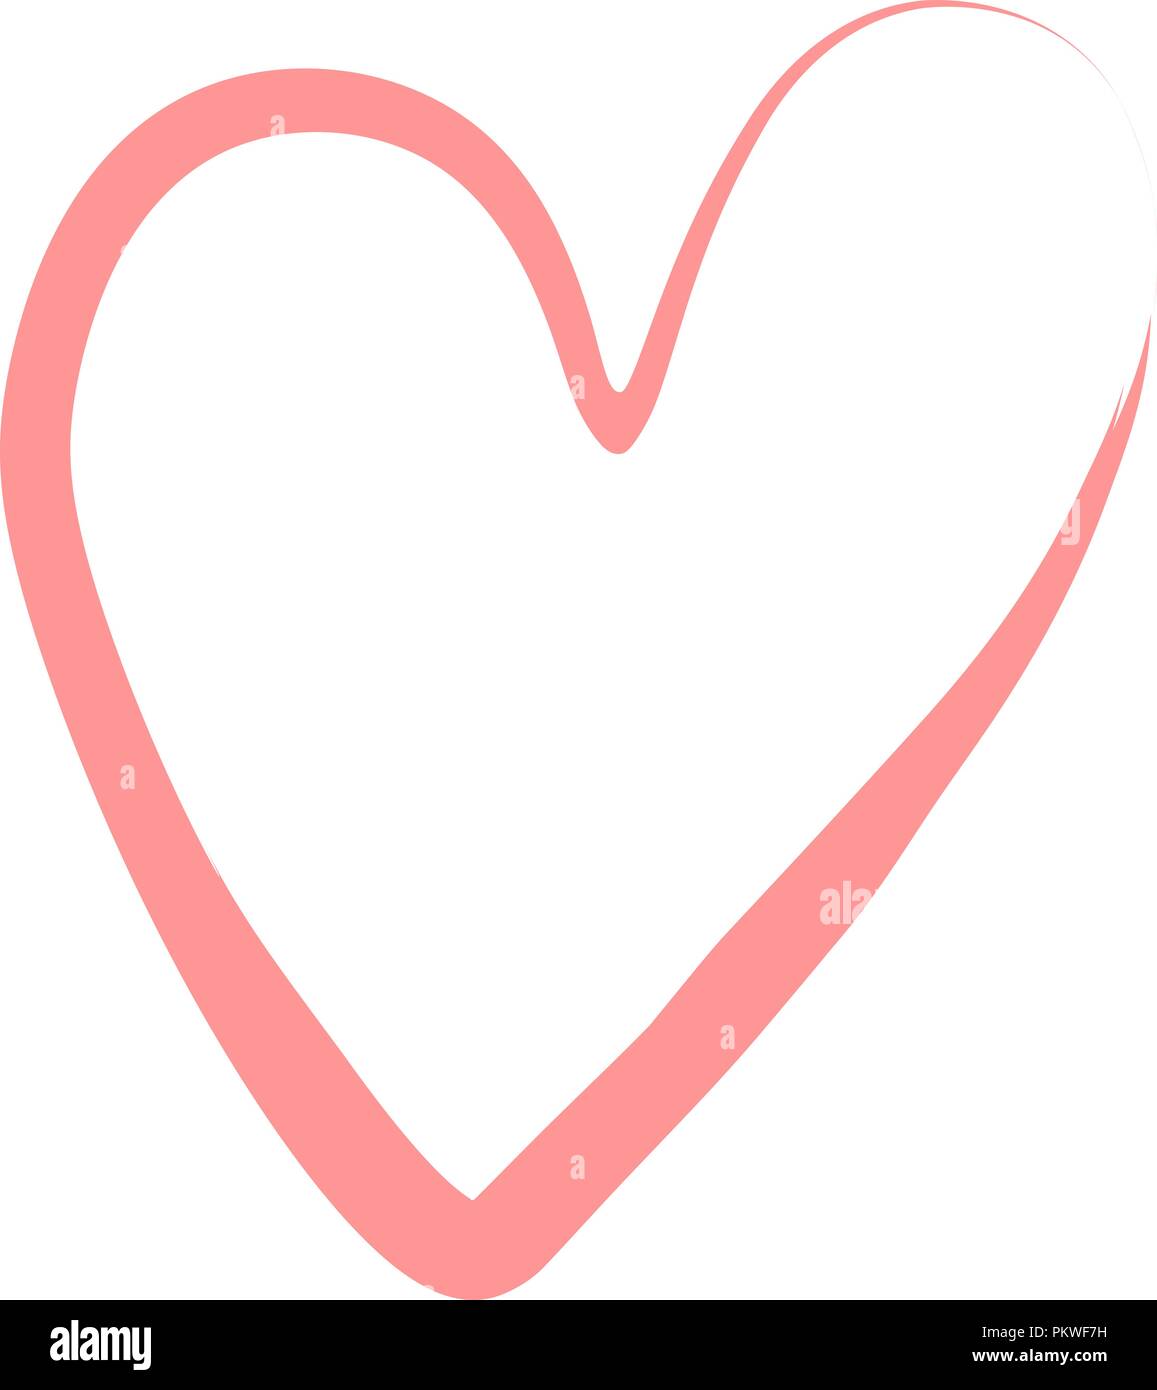 Vektor Herz Mit Pinsel Hand Grunge Herzen Gezeichnet Liebe Symbol Valentinstag Grunge Abbildung Stock Vektorgrafik Alamy